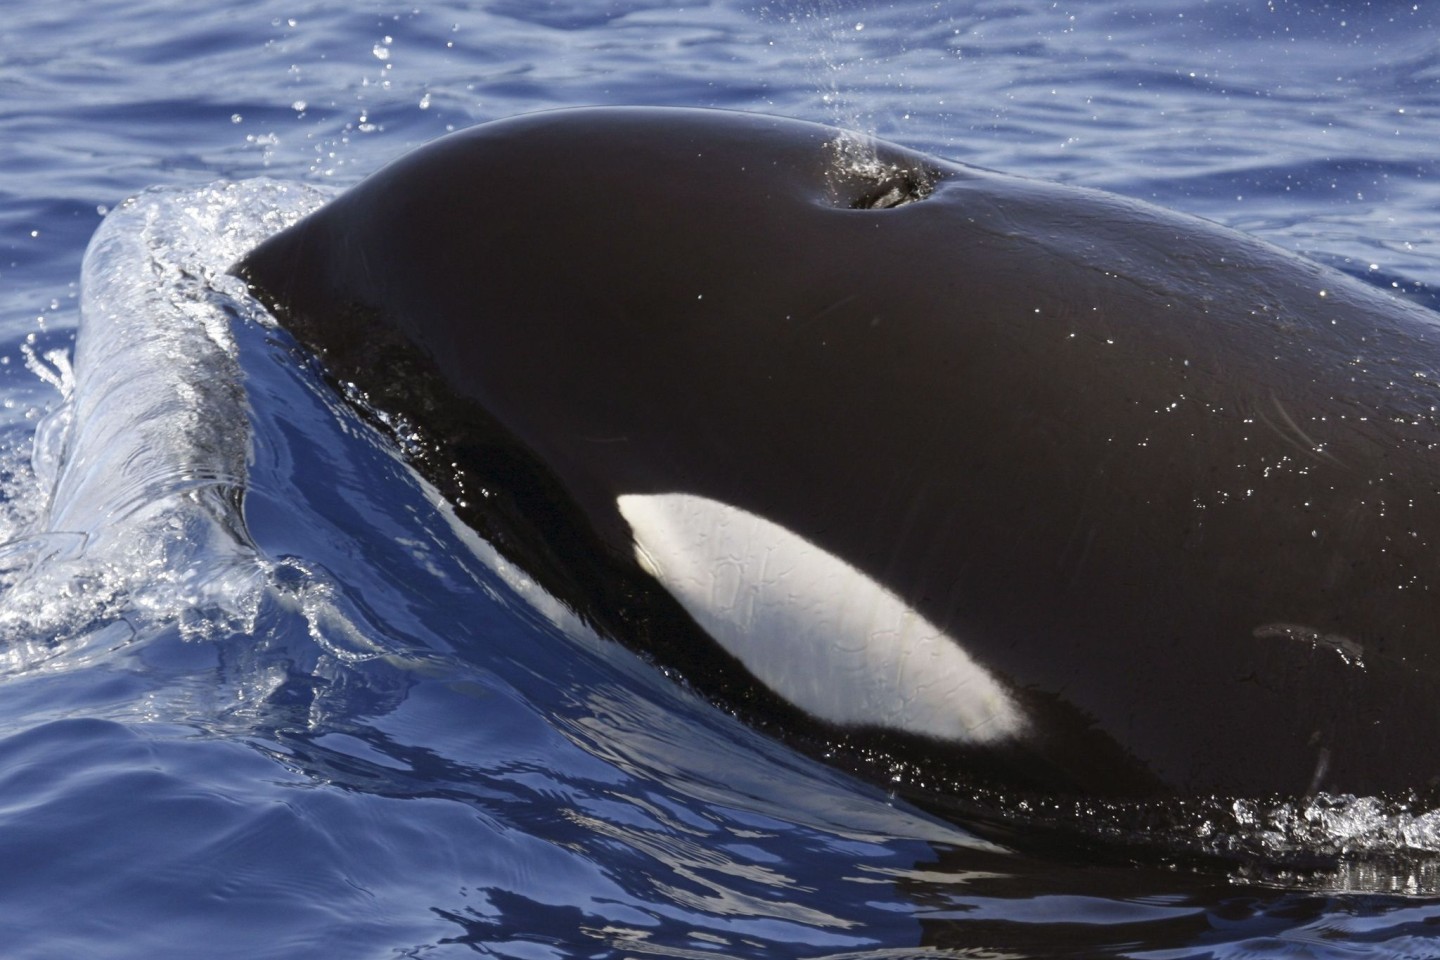 Ein Orca (Schwertwal) im Meer vor Lanzarote. Seit Monaten häufen sich Berichte über Orca-Attacken vor den Küsten Spaniens und Portugals.